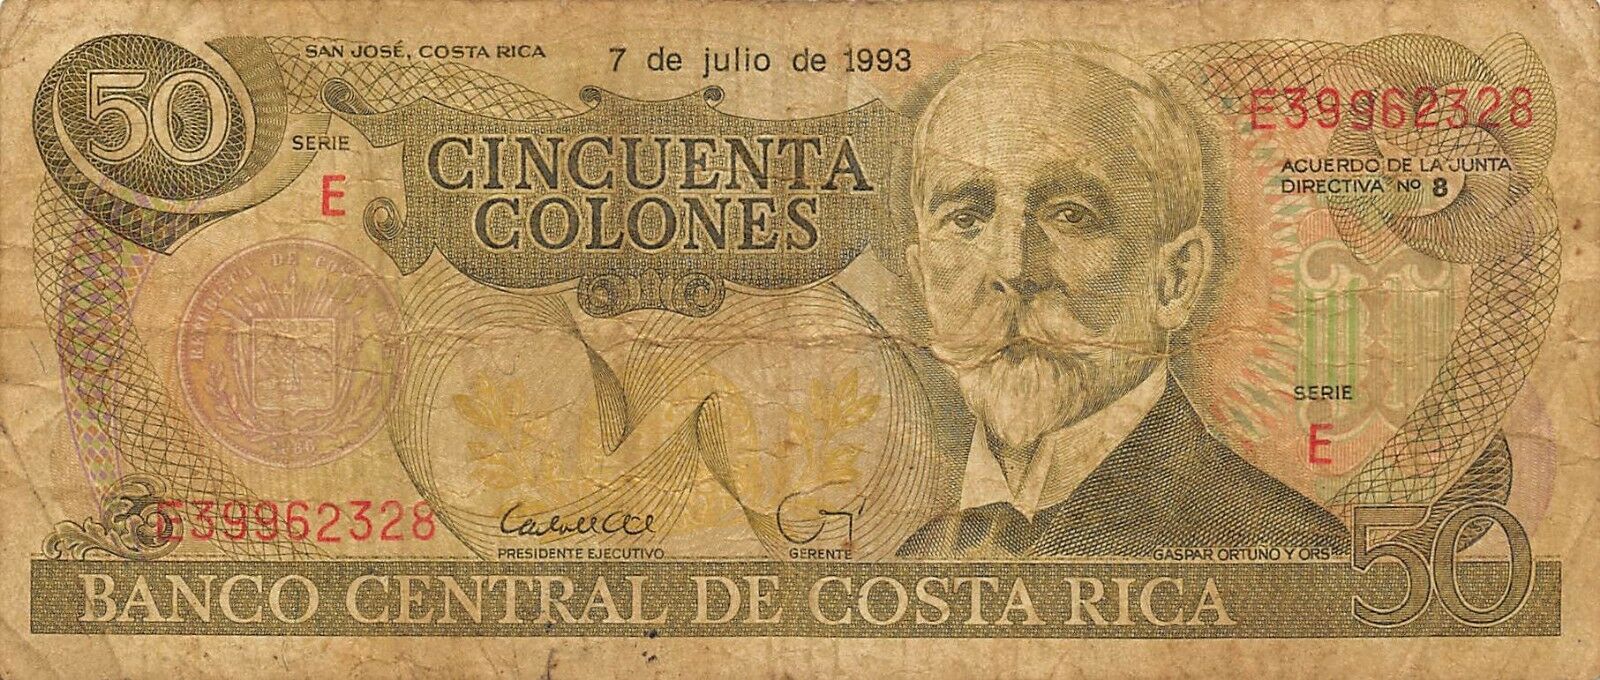 Costa Rica   50  Colones  7.7.1993  Series  E 8  Circulated Banknote  Bk818w